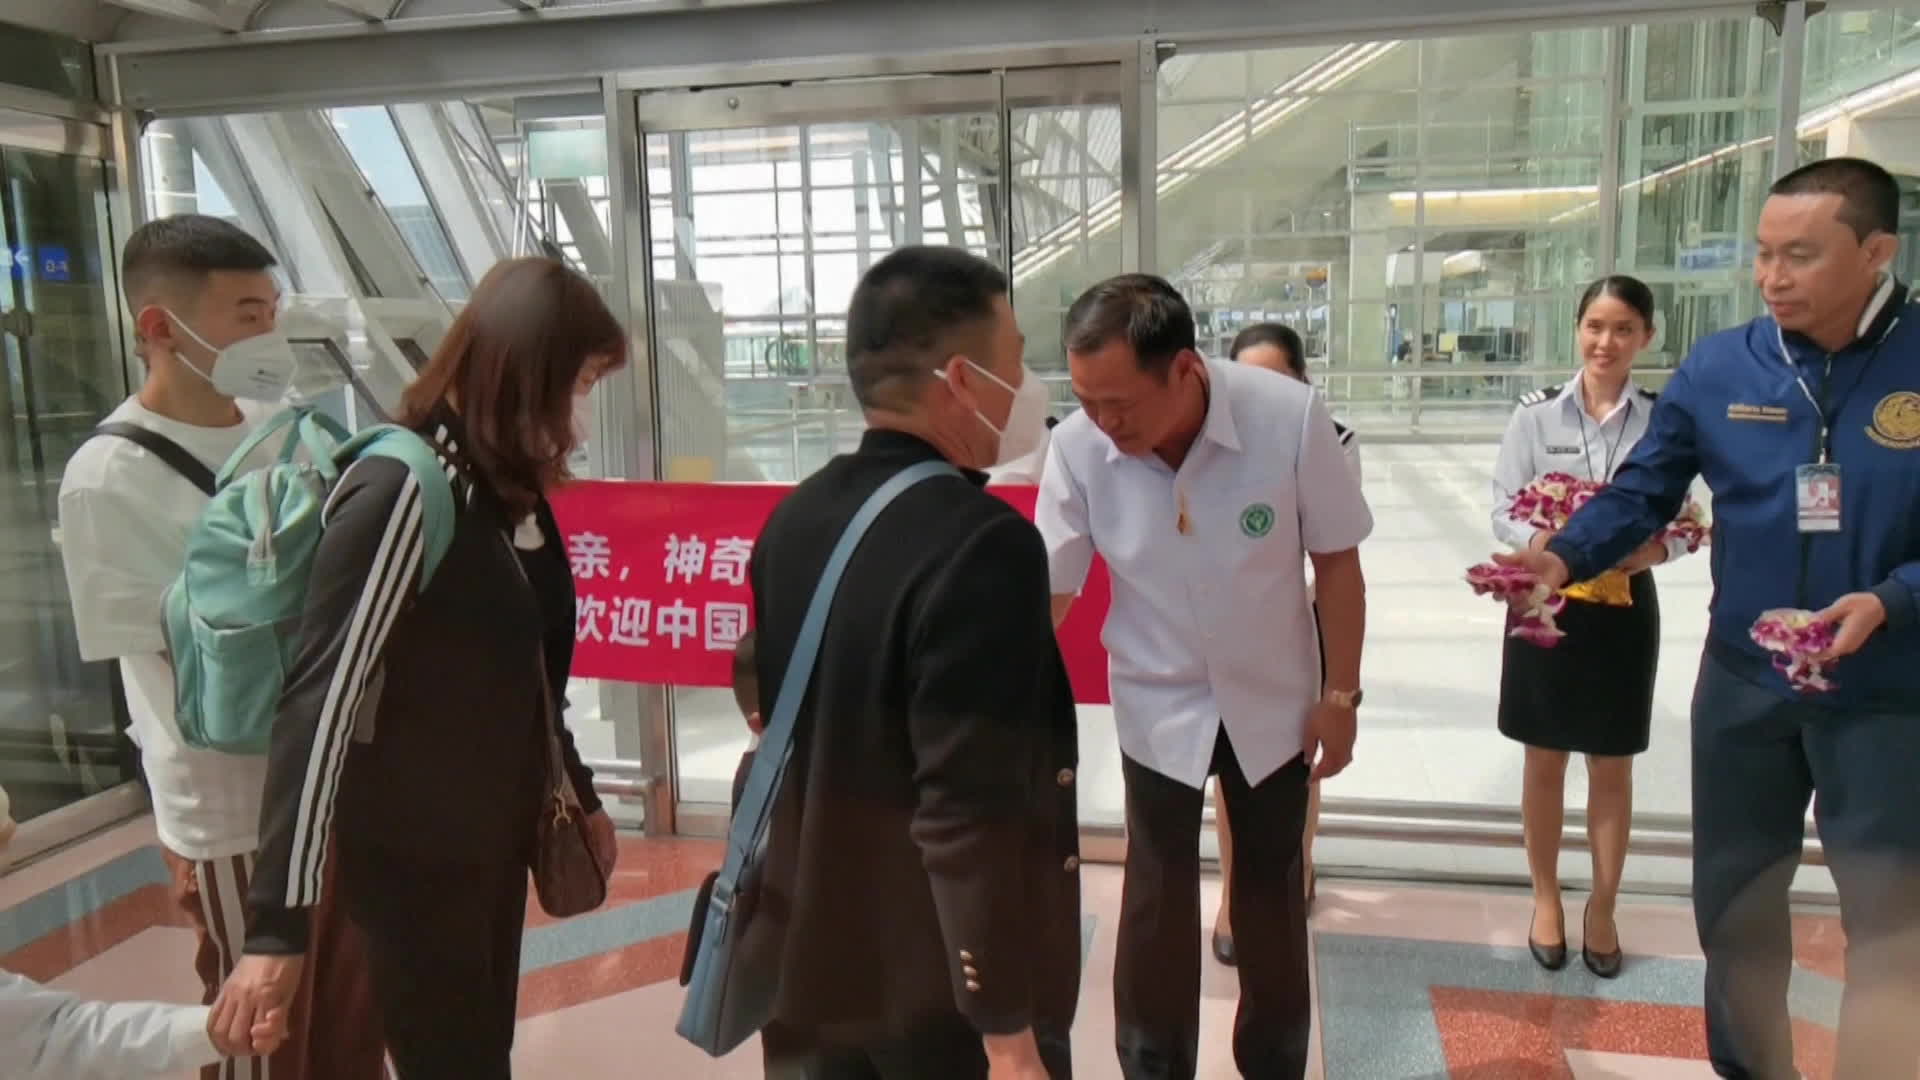 태국 관광 당국 관계자들이 지난 2월 방콕 공항에서 태국을 방문한 중국인 관광객들을 환영하고 있다. (중국 CCTV 캡처)